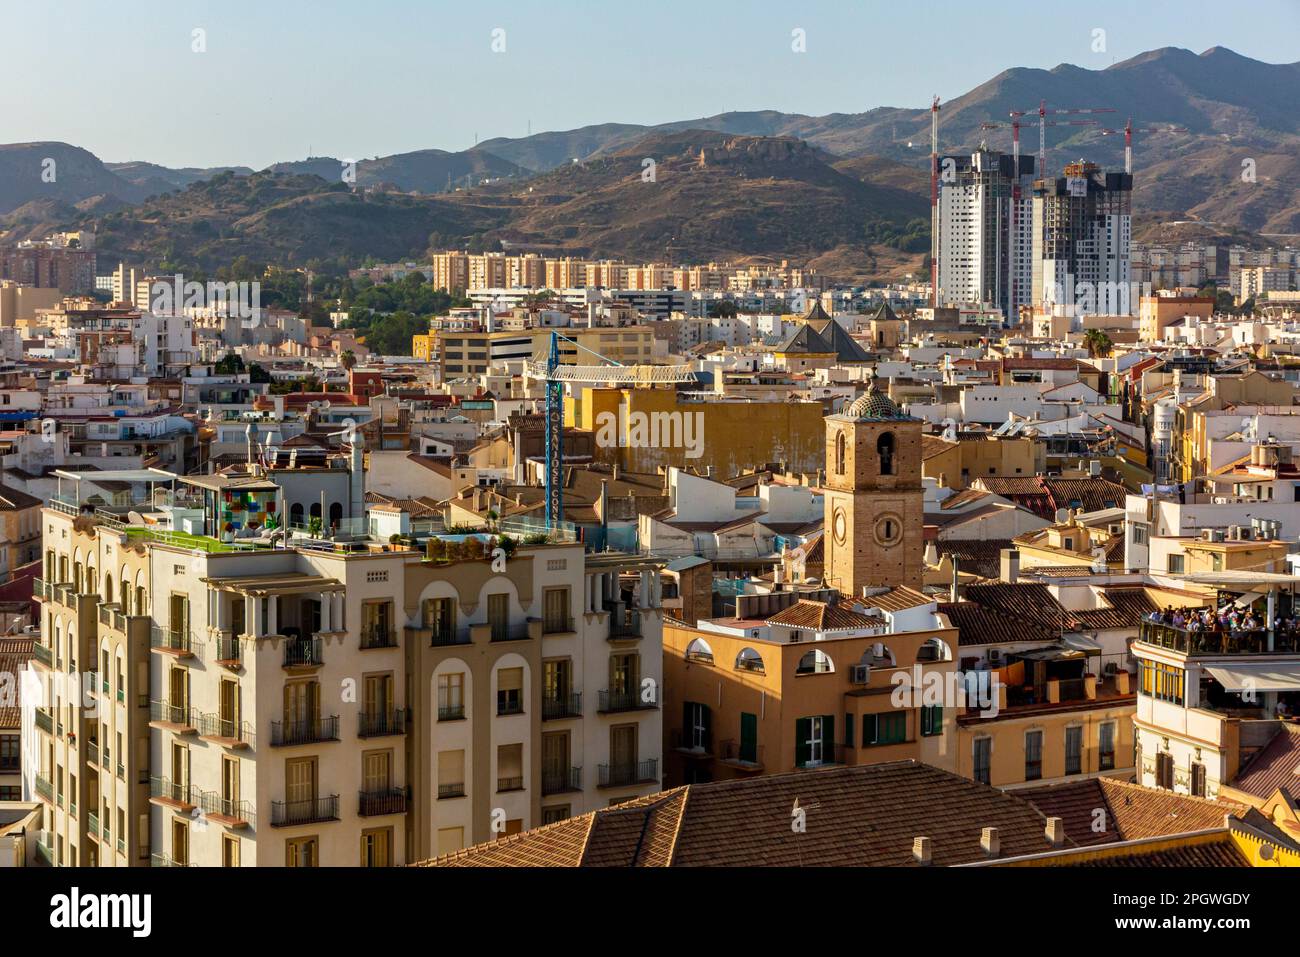 Vue sur les maisons, les appartements et les bâtiments de Malaga une grande ville dans la province de Malaga, Andalousie, sud de l'Espagne. Banque D'Images